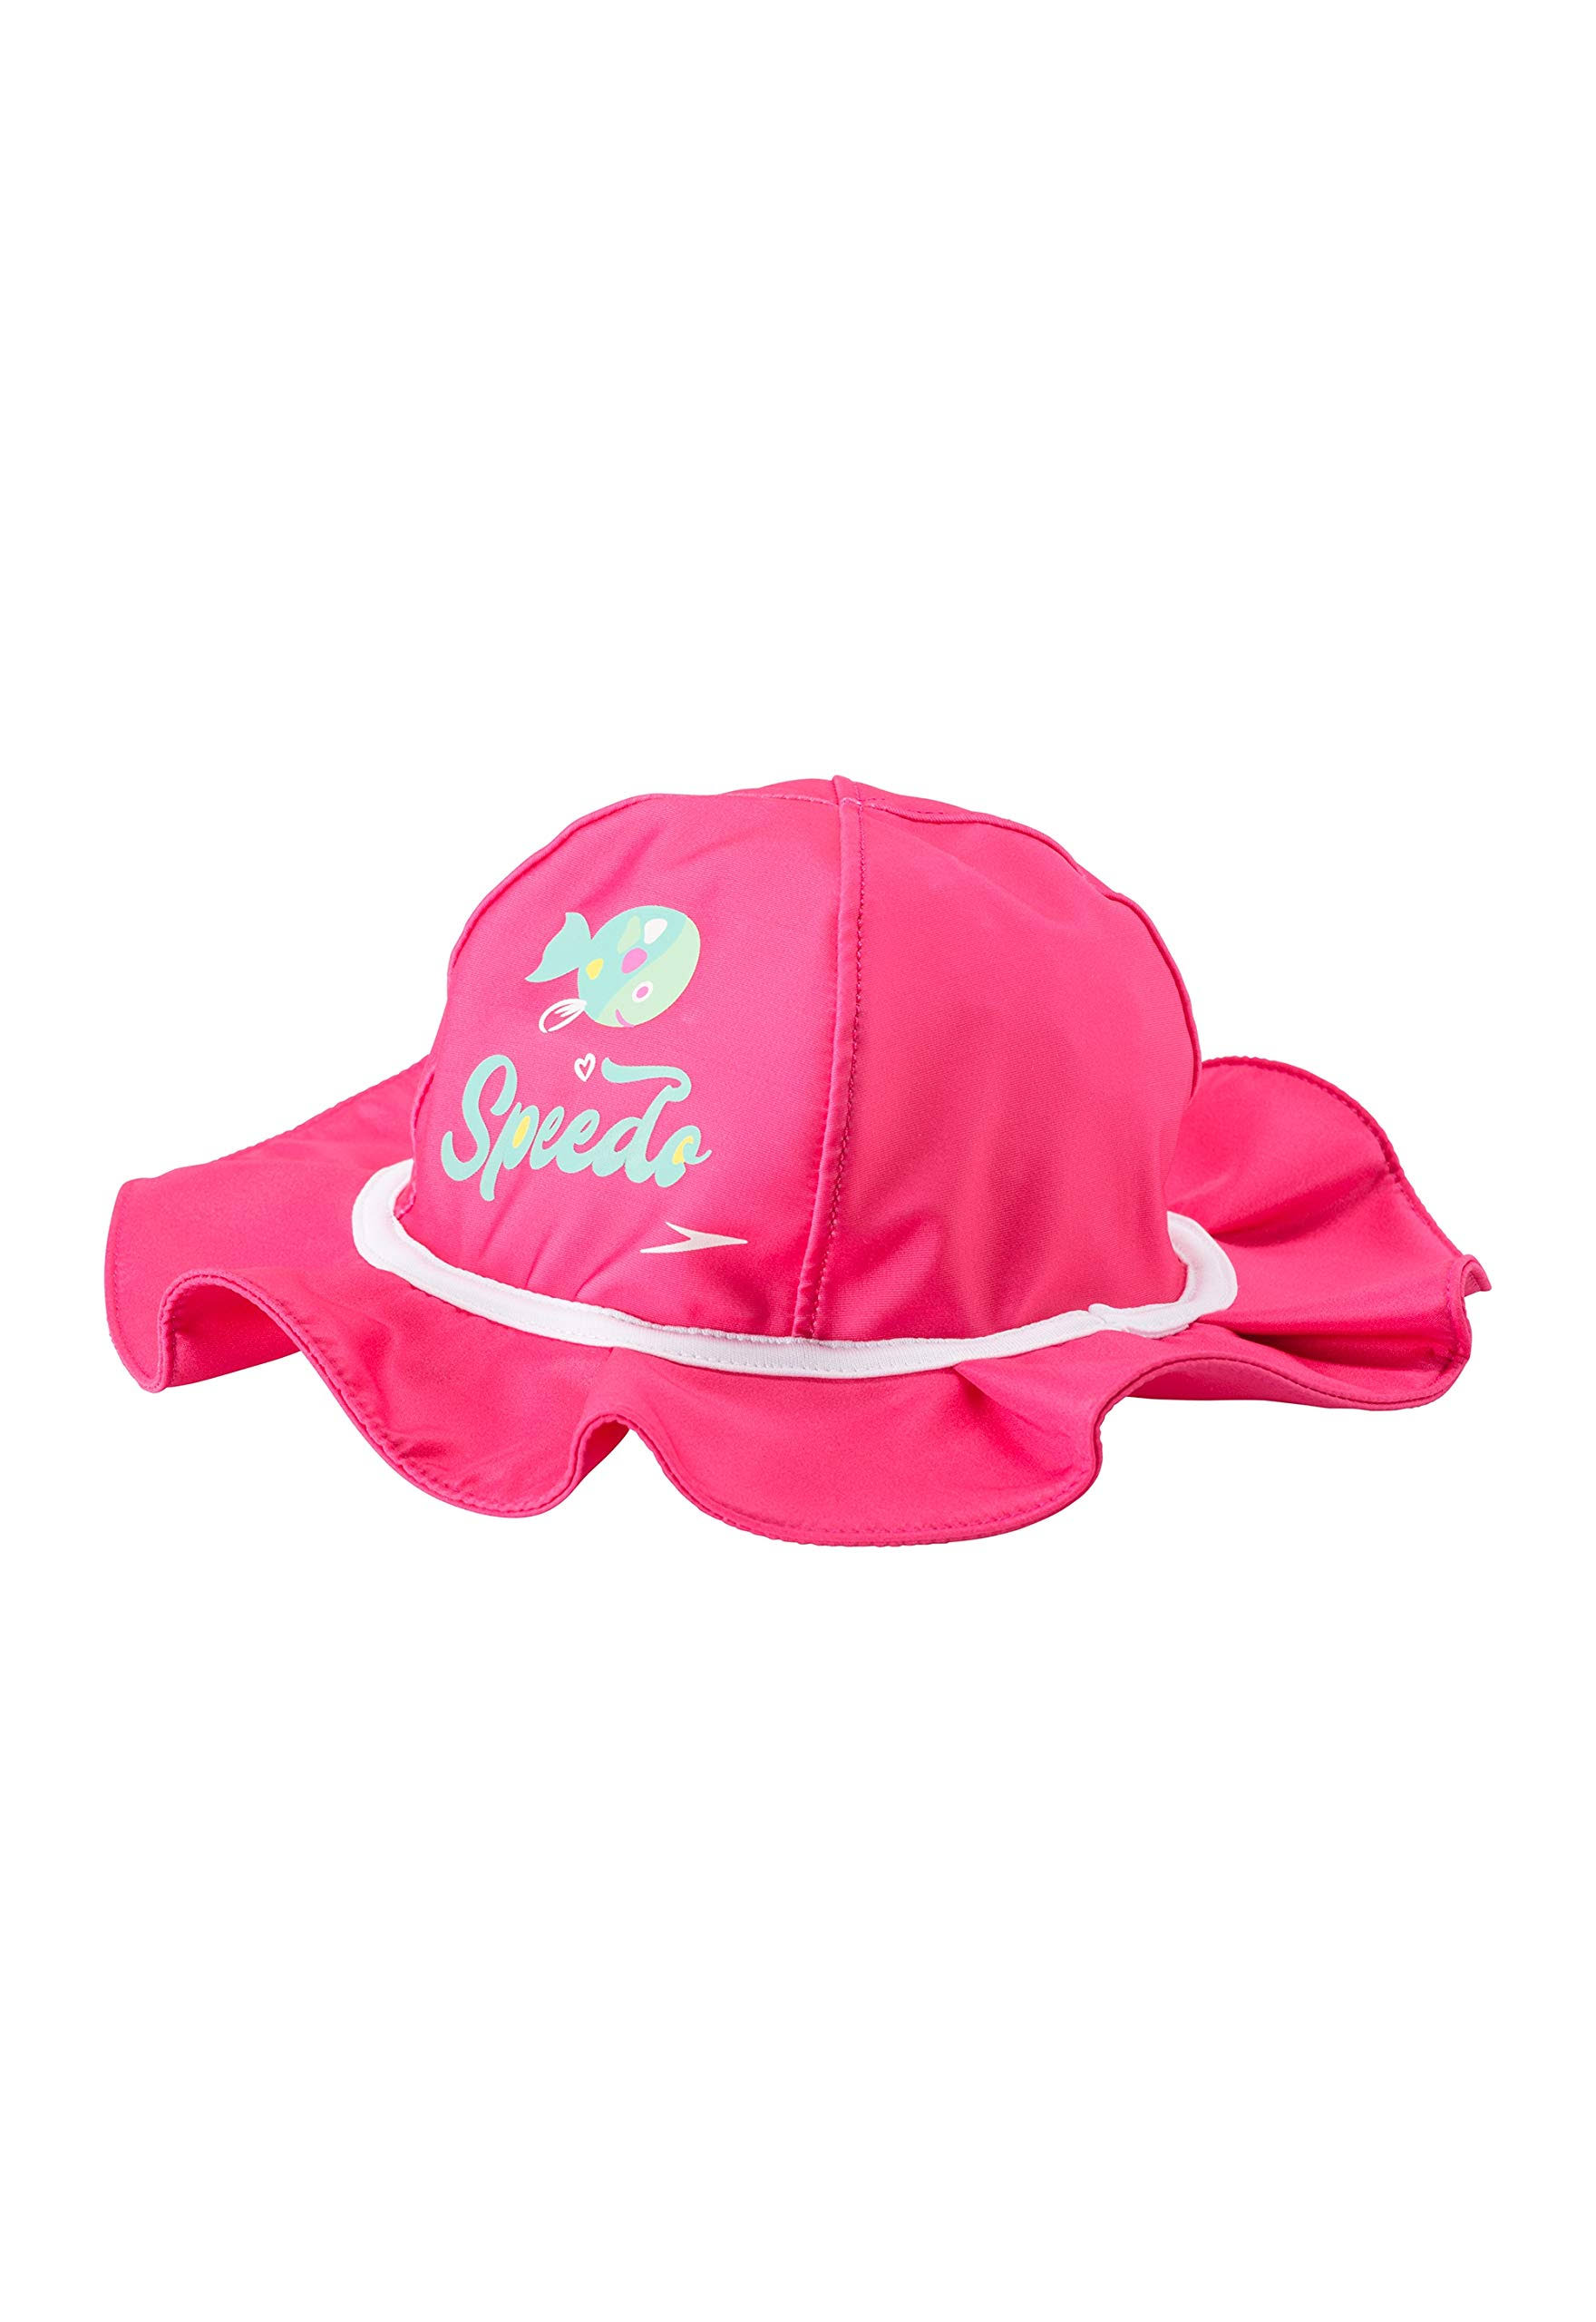 Speedo Girls' Begin to Swim UV Bucket Hat Bright Pink L/XL / Pink